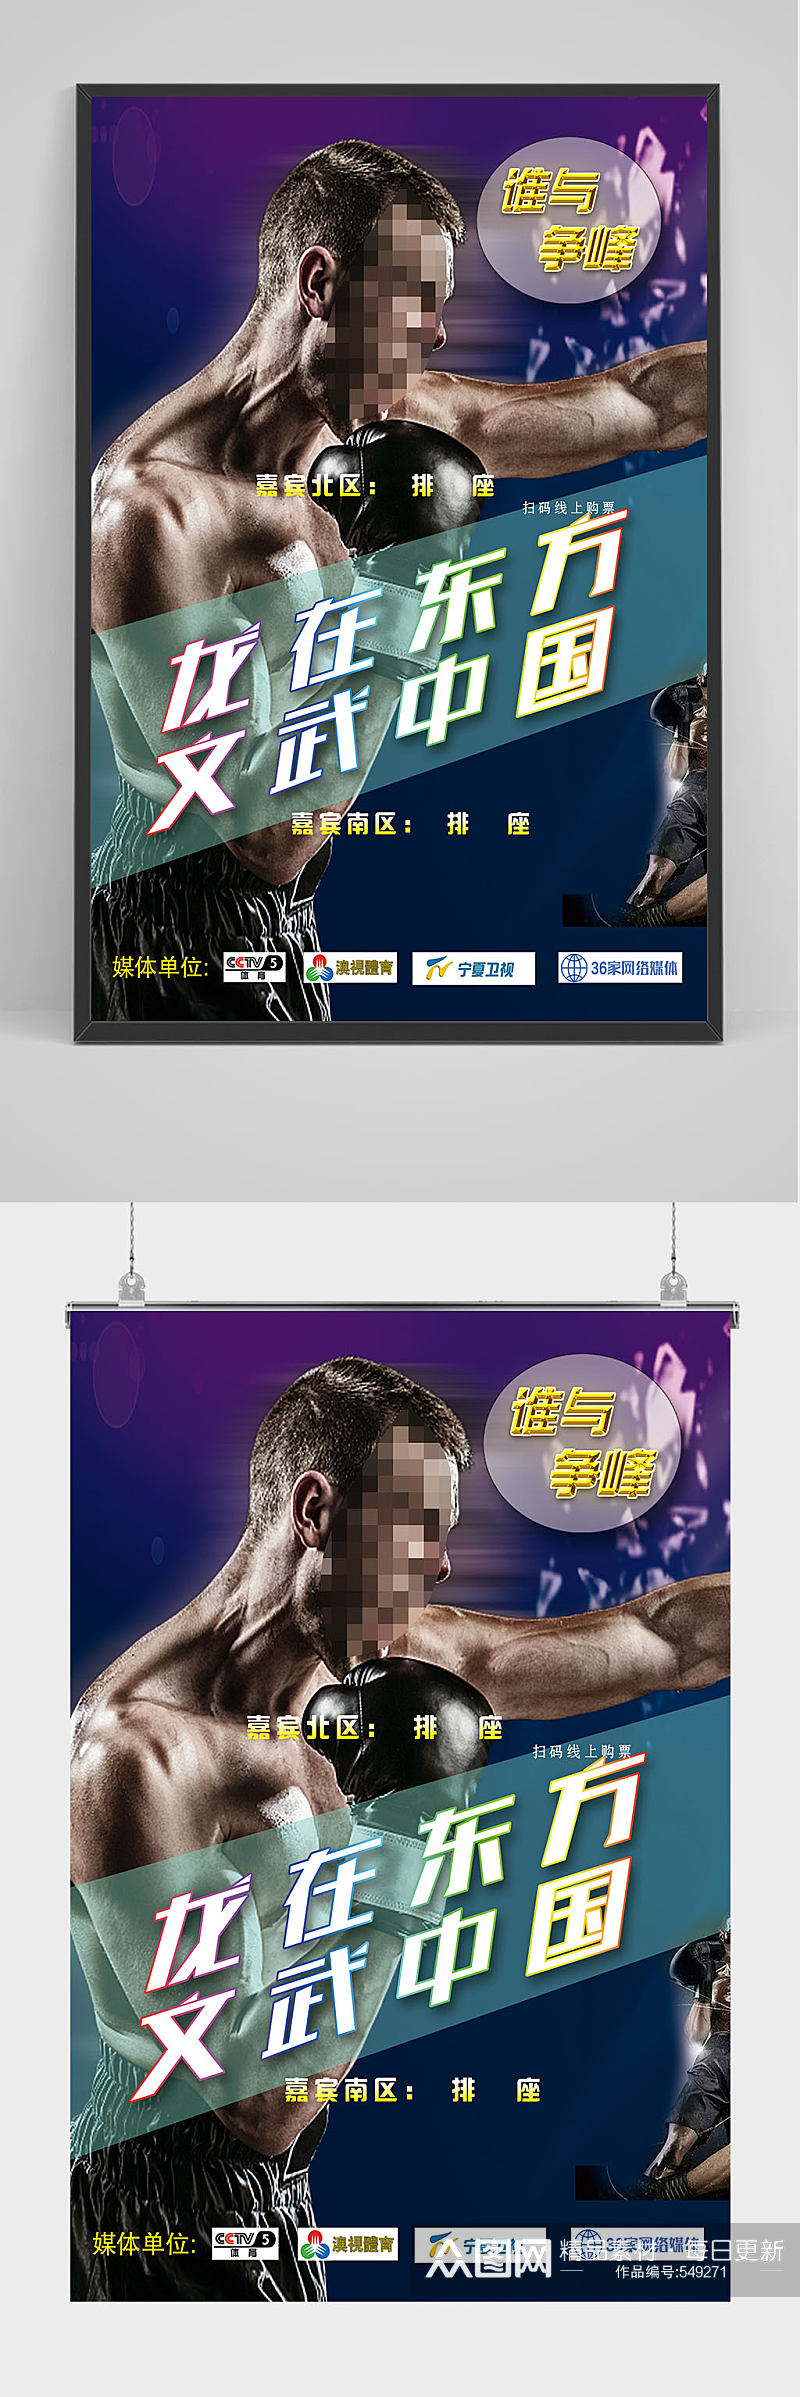 简洁大气拳击比赛海报设计素材